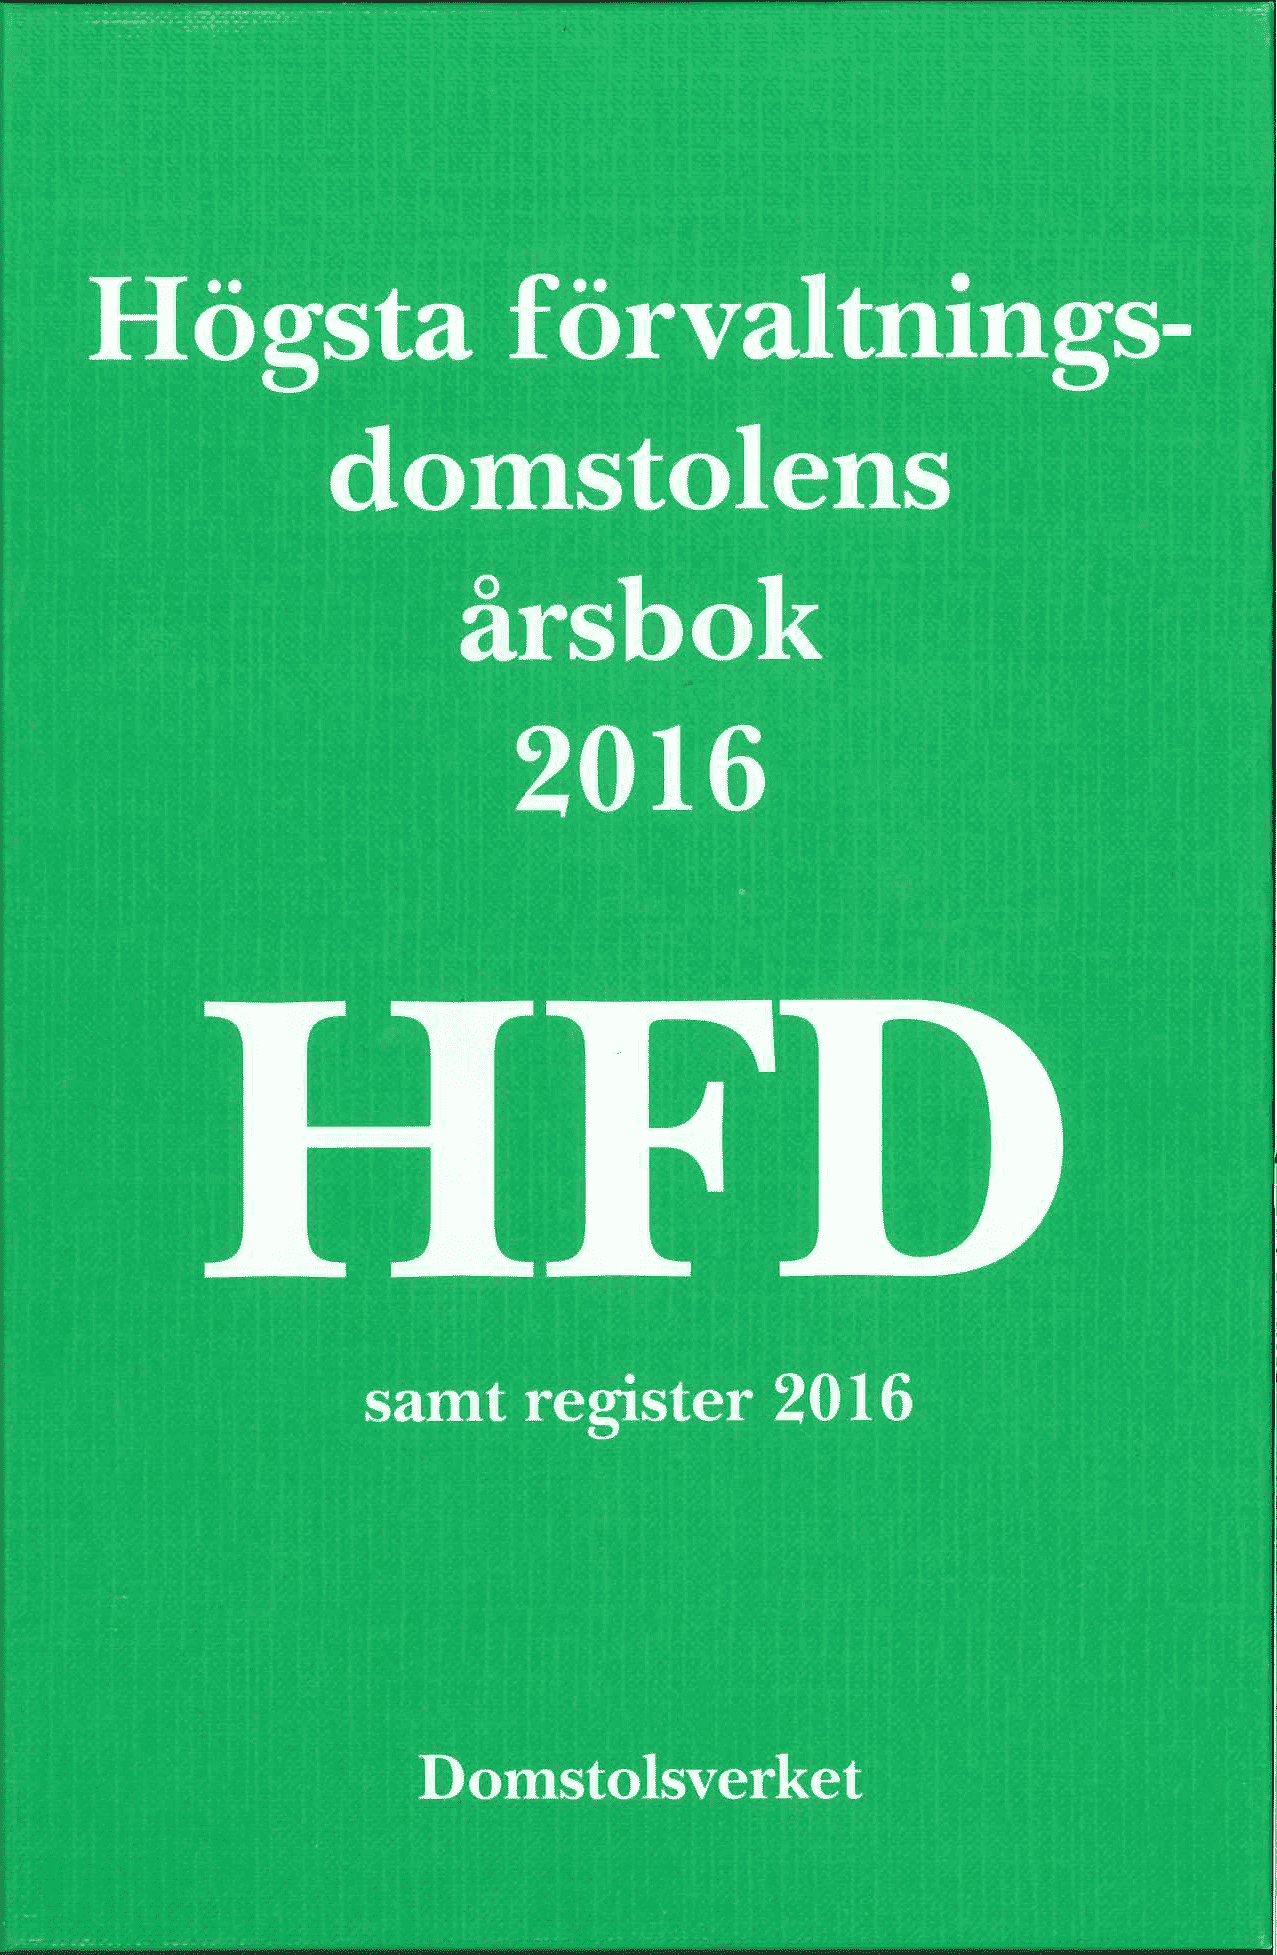 Högsta förvaltningsdomstolens årsbok 2016 (HFD)